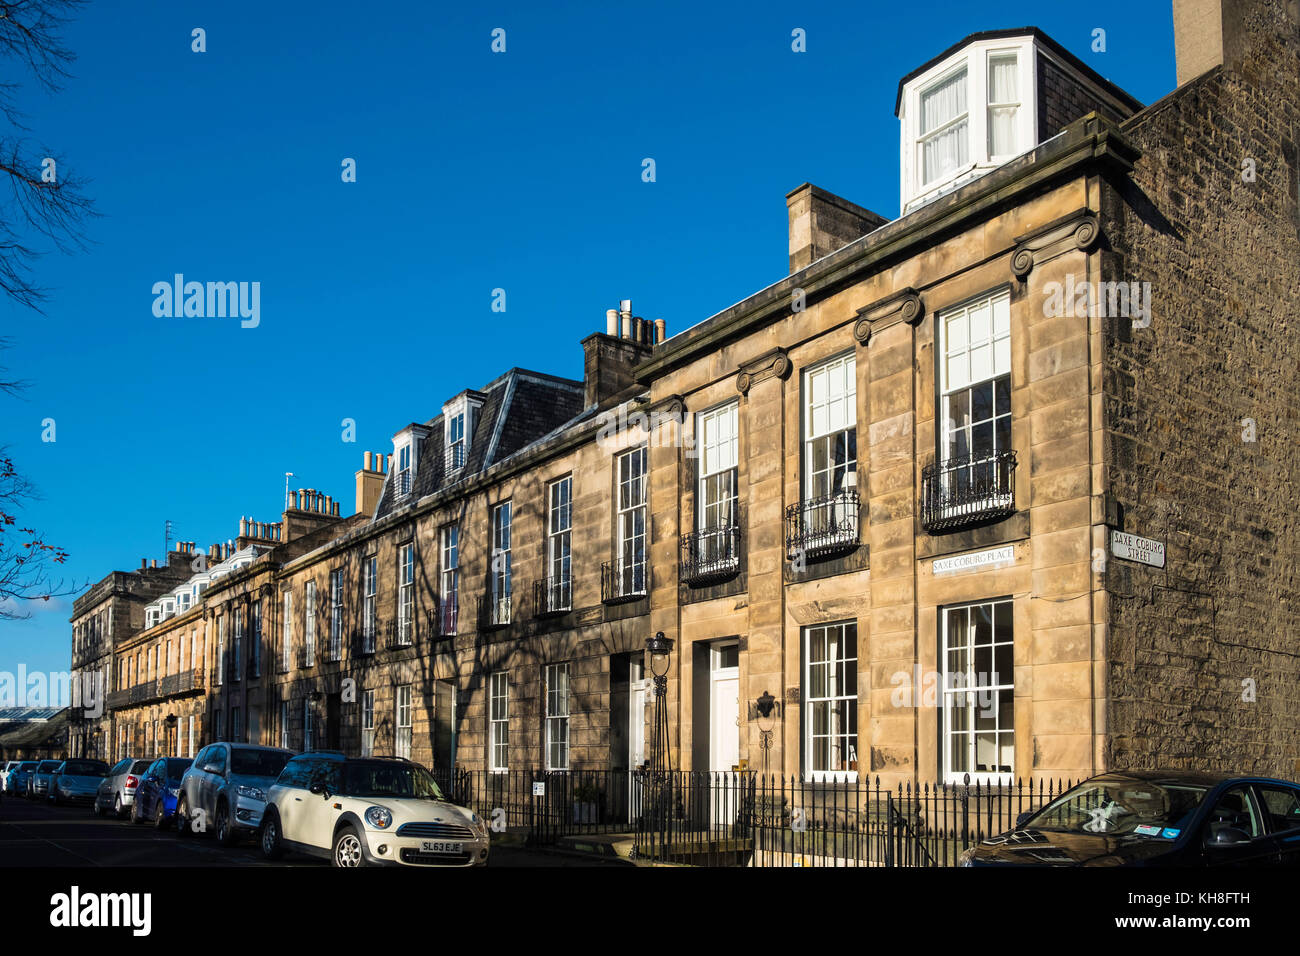 Vue sur les maisons mitoyennes sur Saxe Coburg place dans le quartier Stockbridge de New Town à Edinburgh, Écosse, Royaume-Uni Banque D'Images